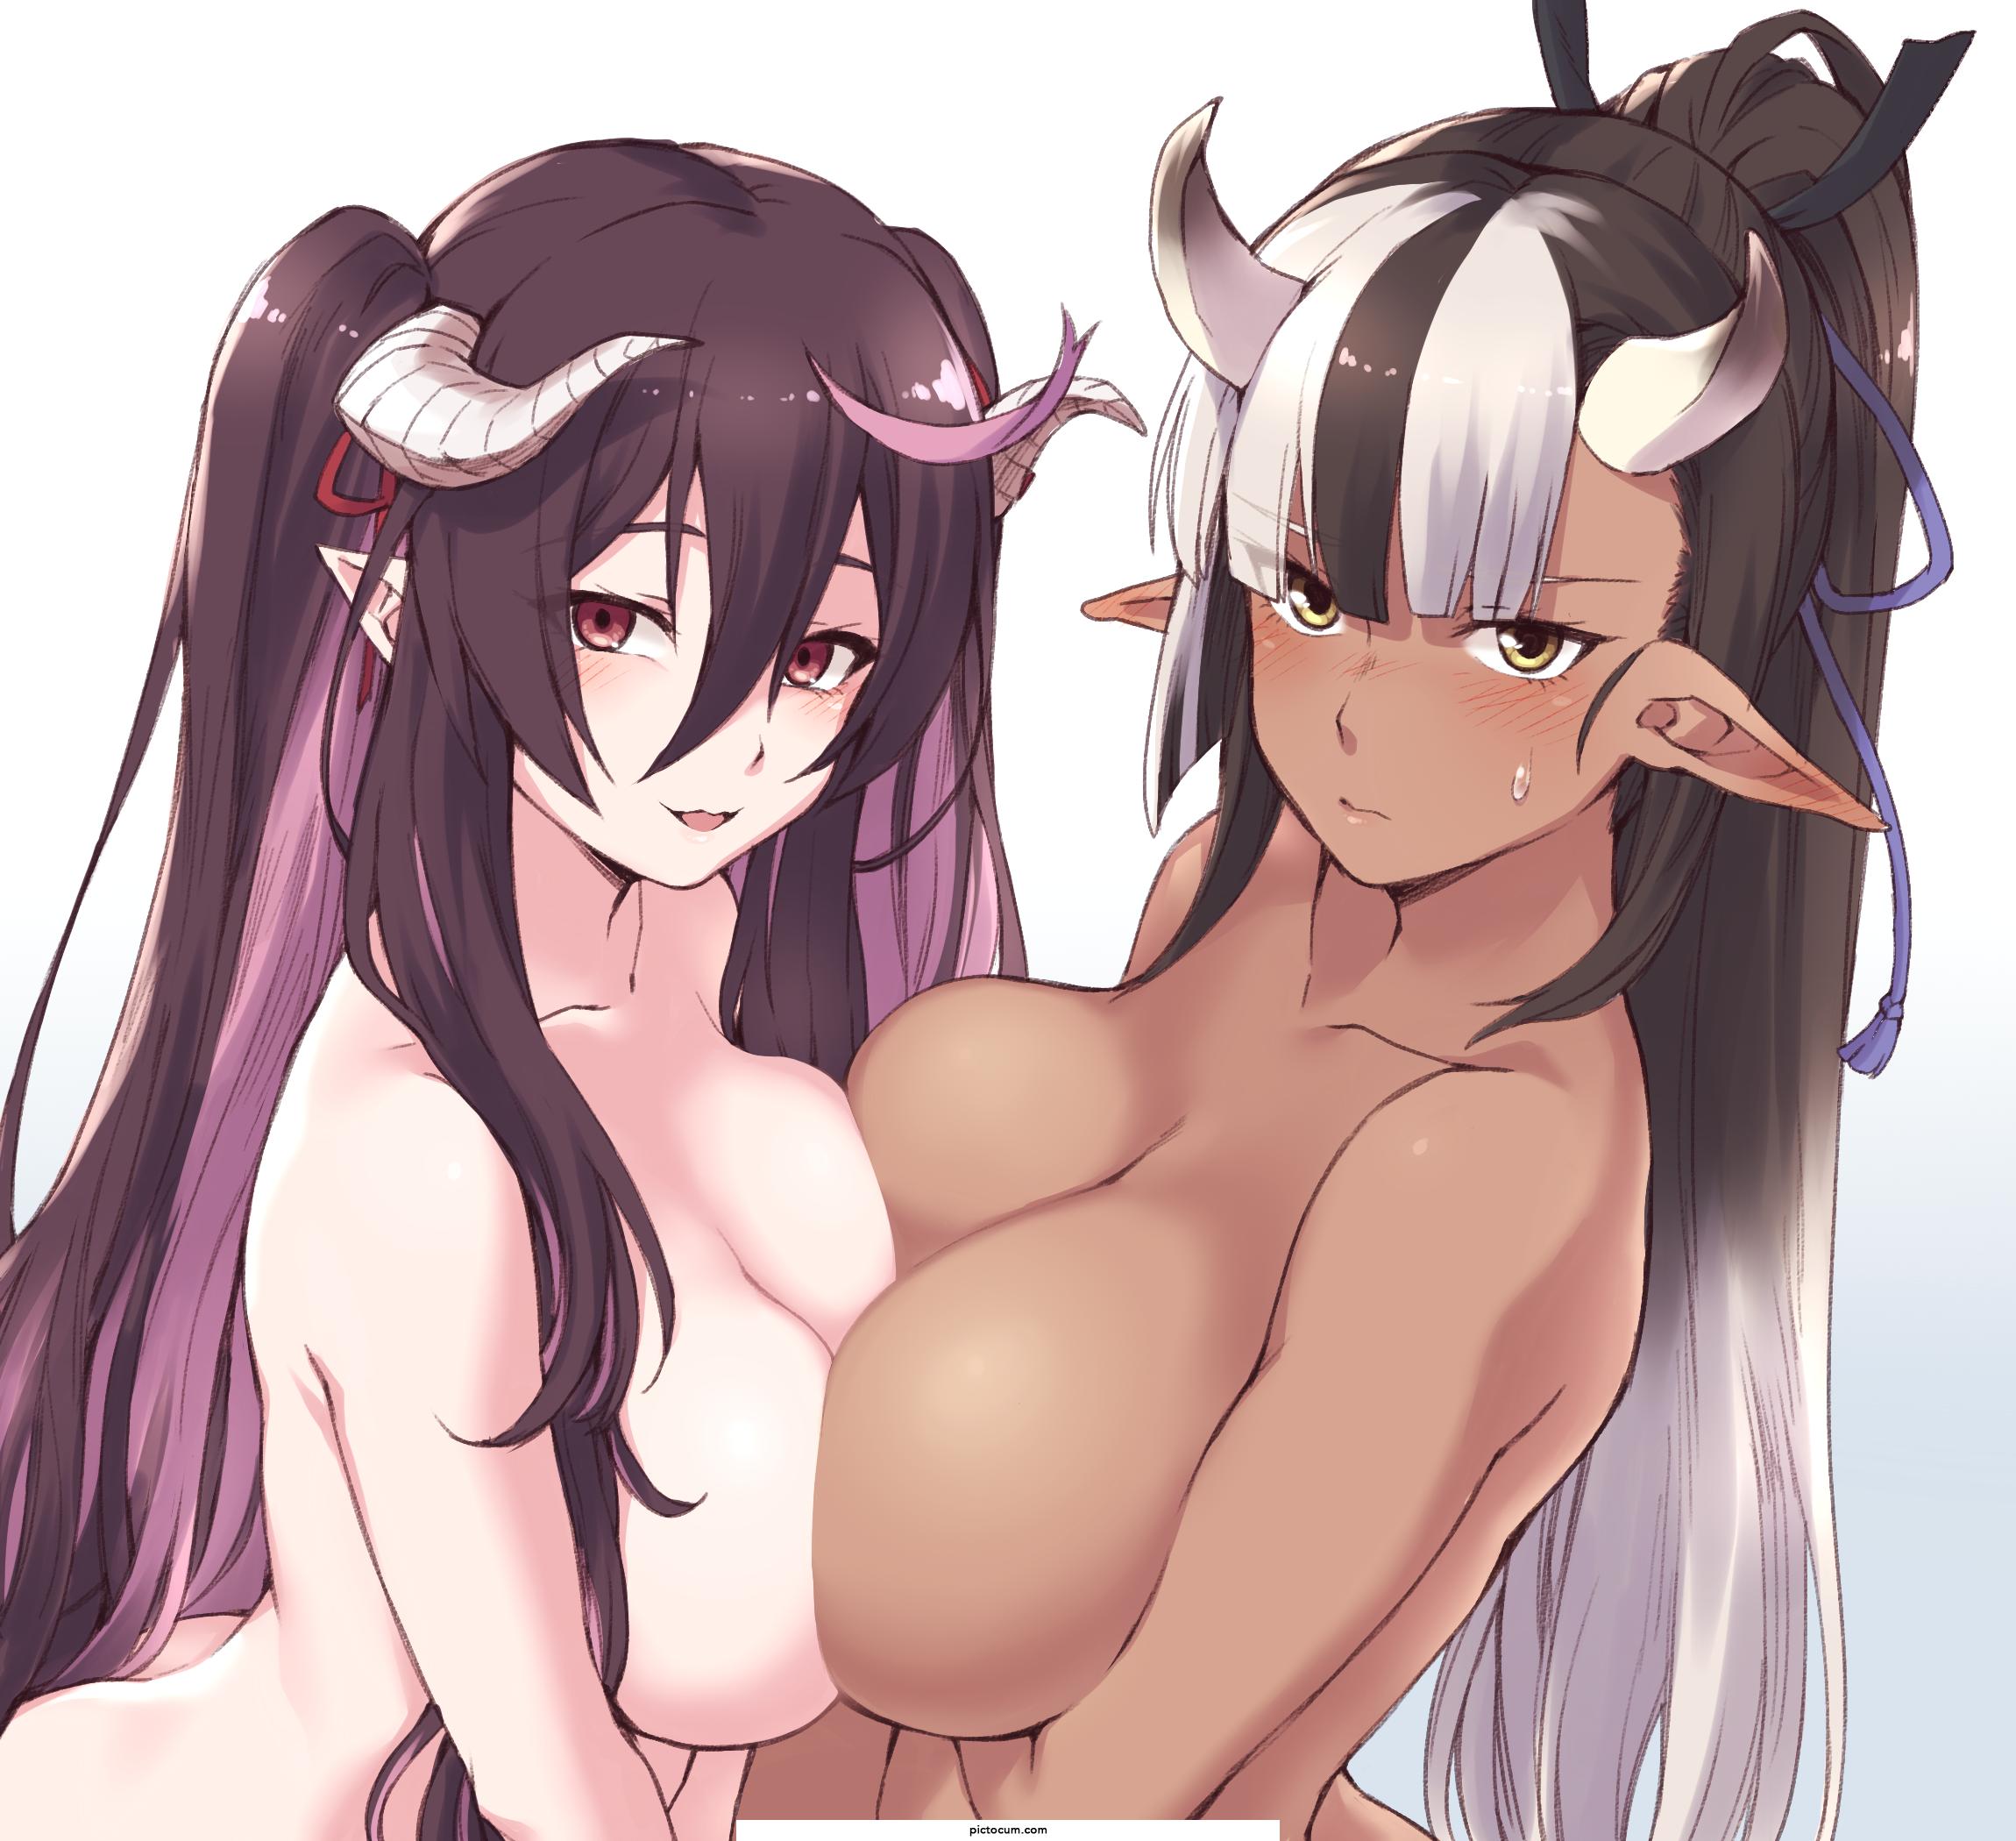 Devilish Demon Girl And Cow-Like Demon Girl